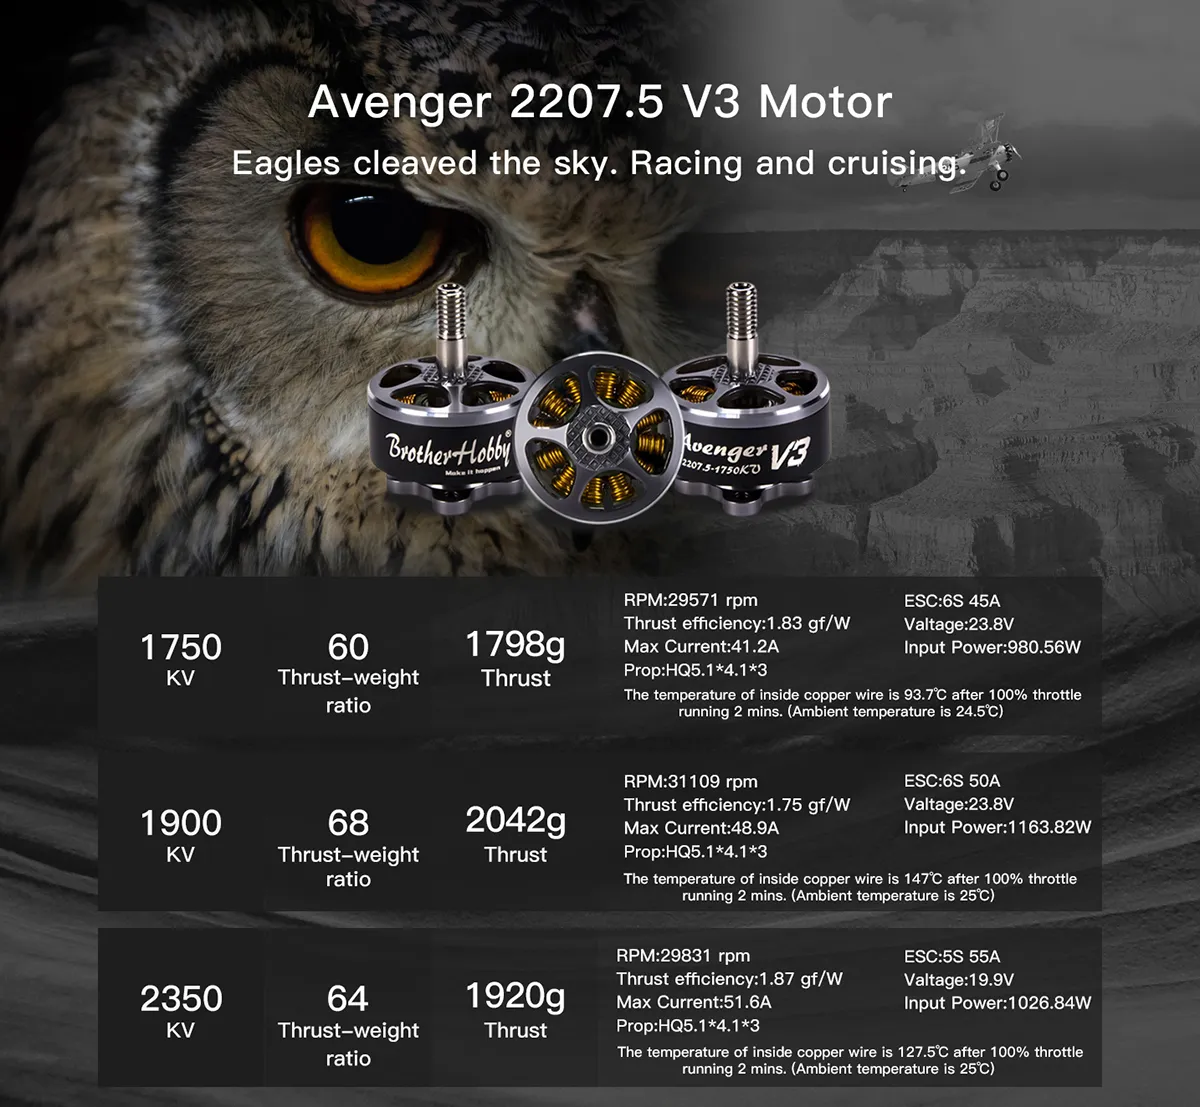 Avenger 2207.5 V3 Motor Eagles cleaved the sky: Racing